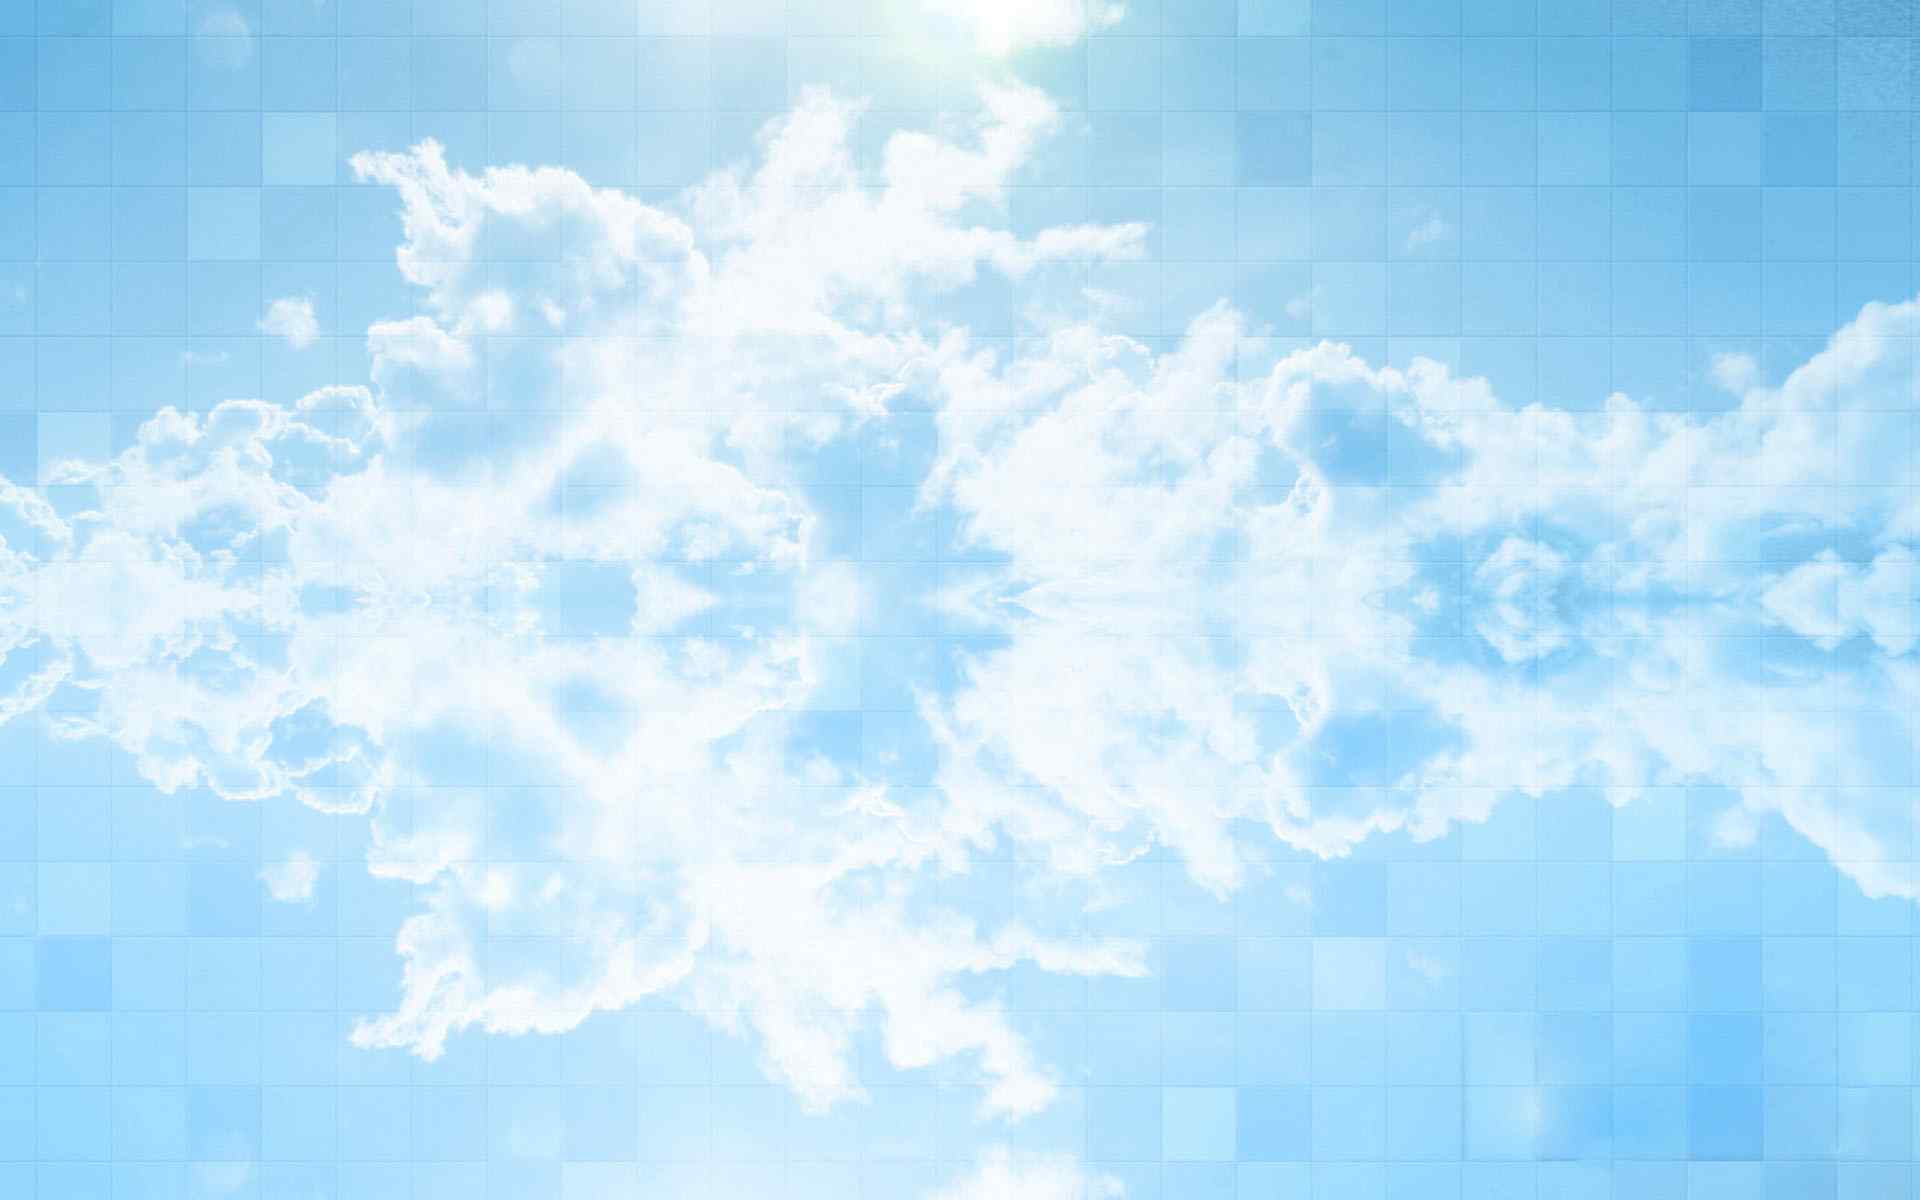 蓝天白云风景壁纸